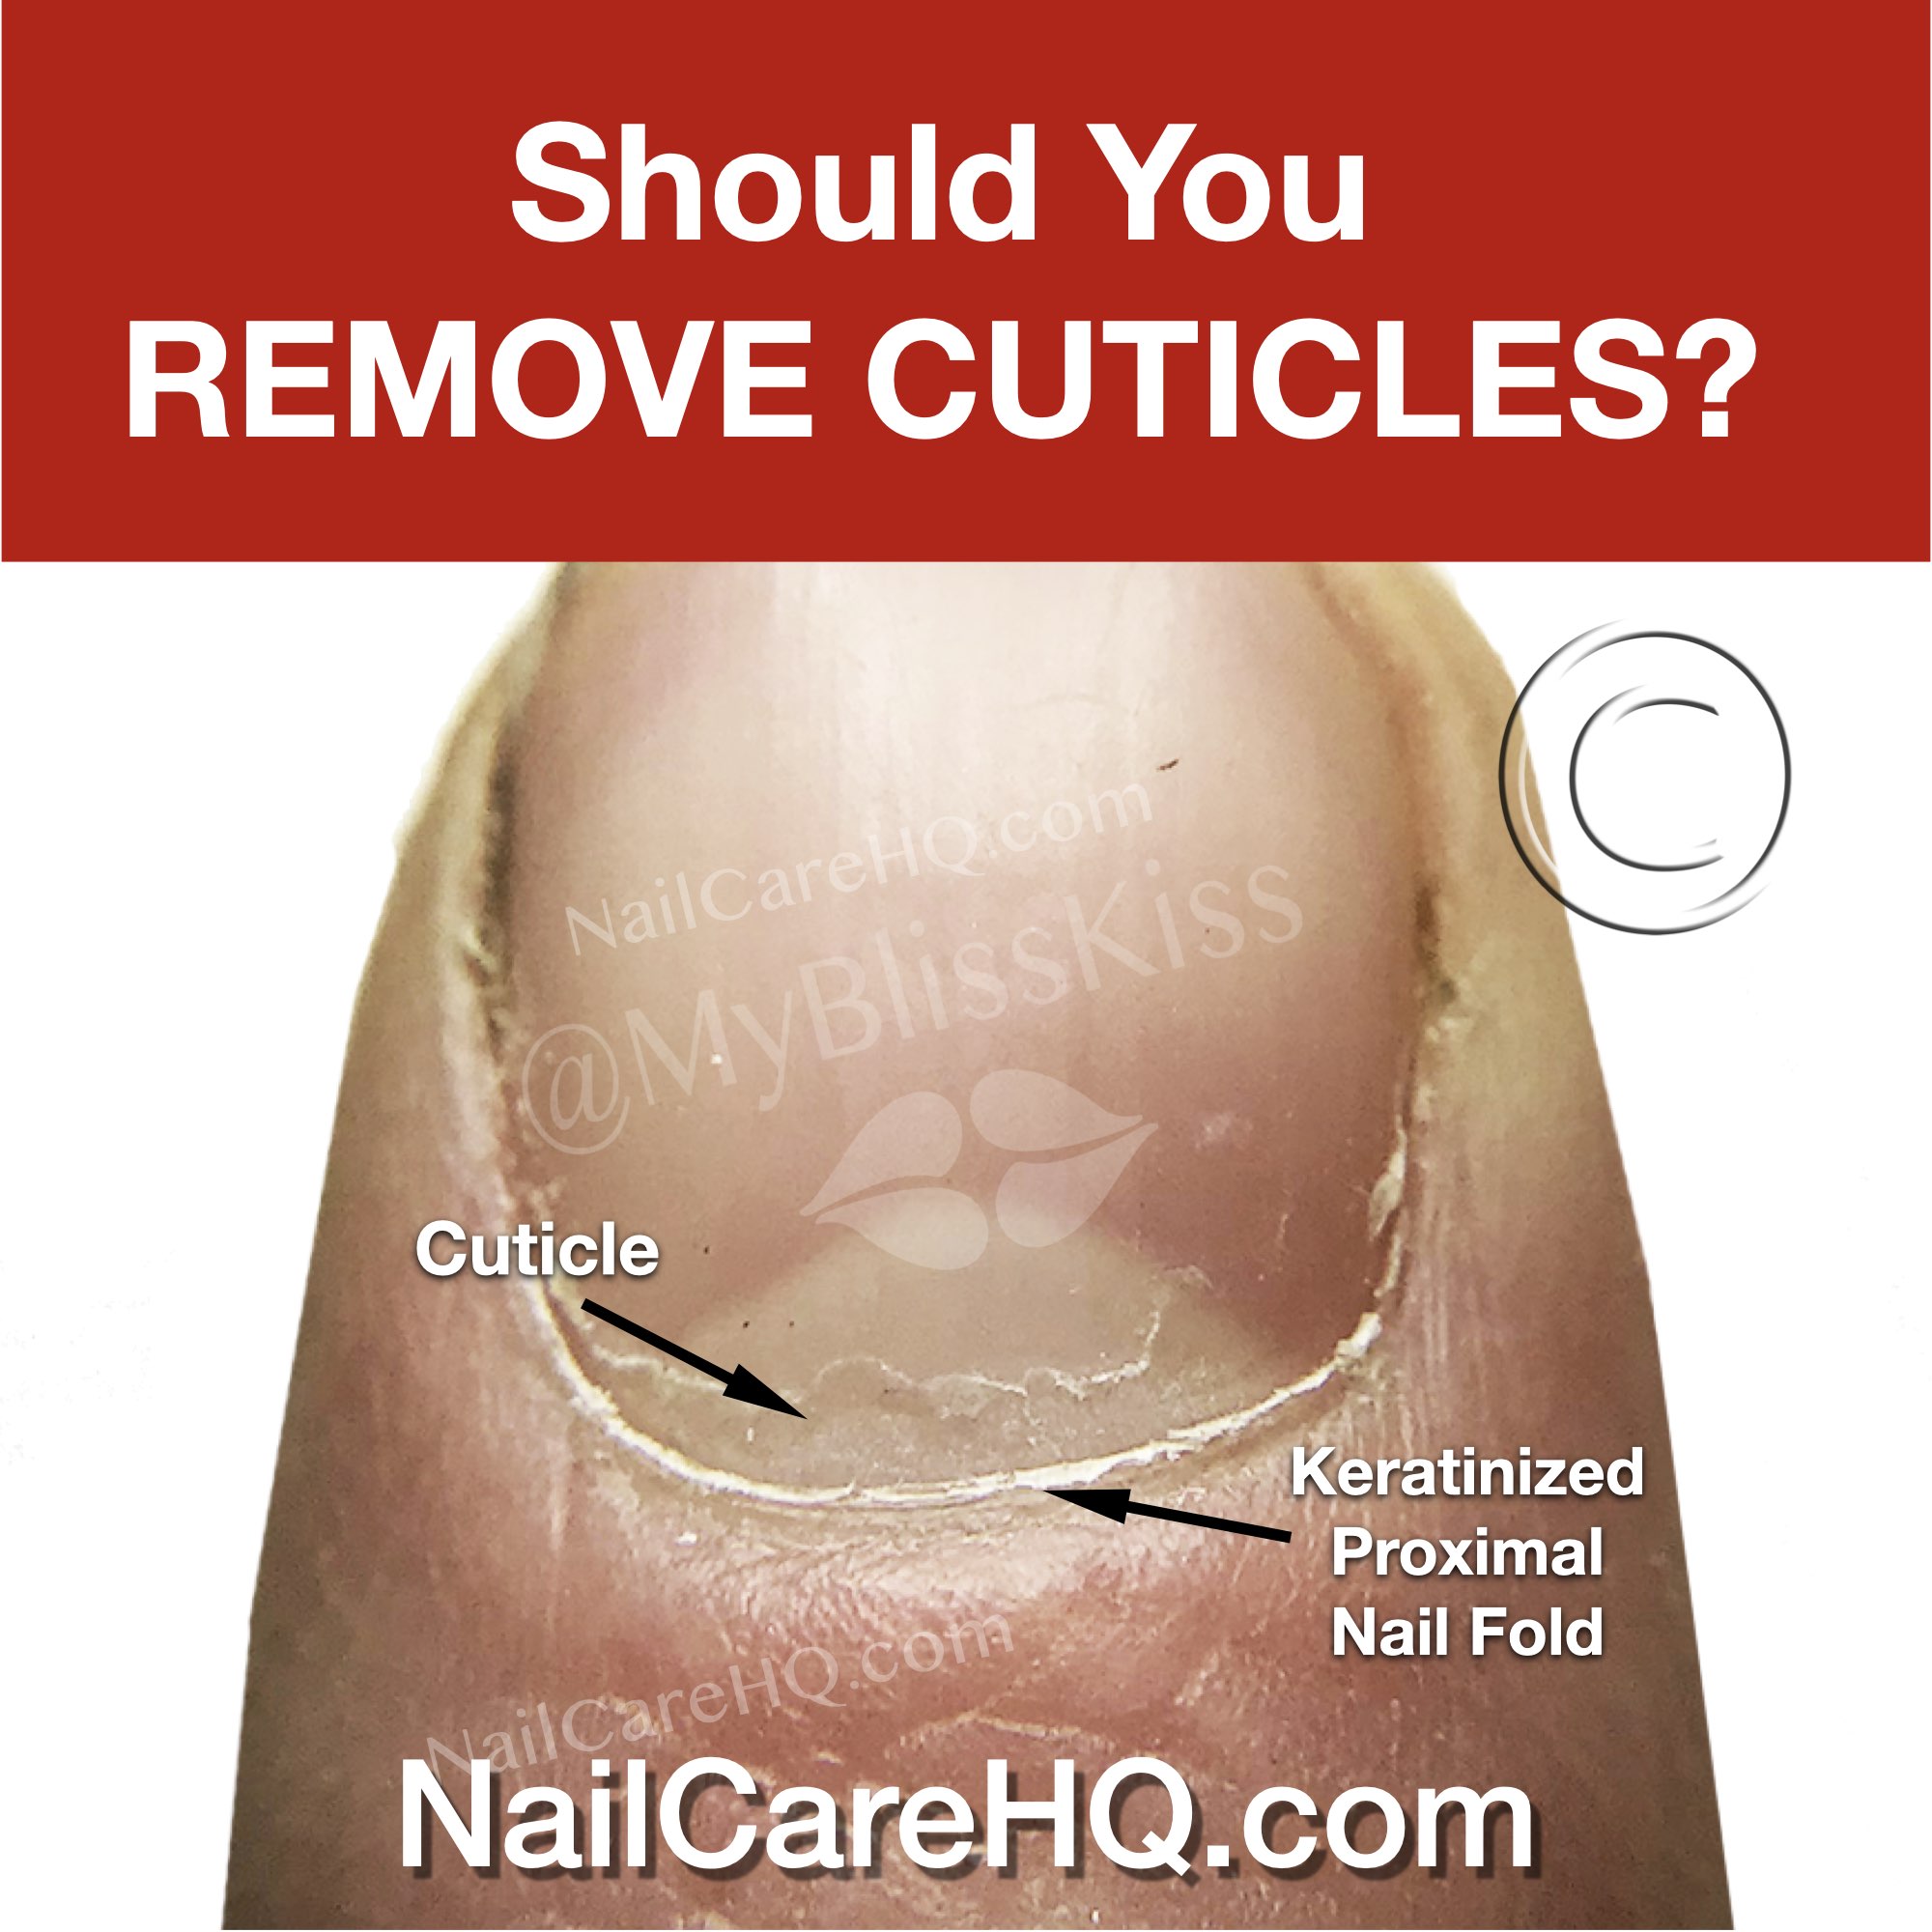 Should You Remove Cuticles?